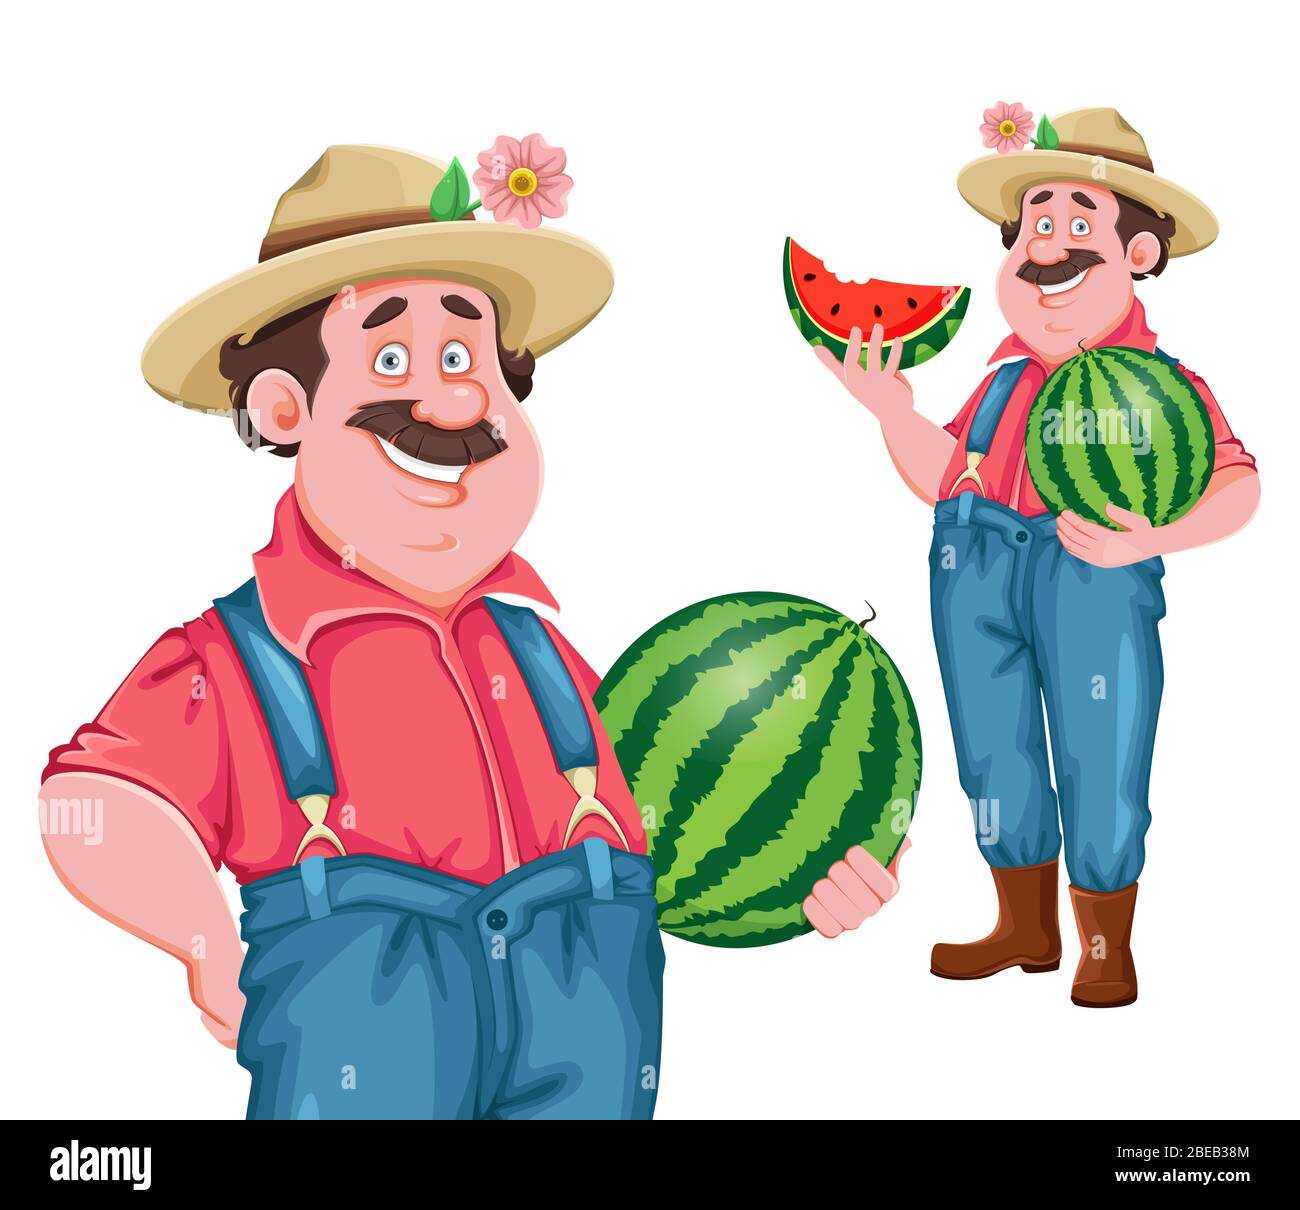 Farmer Cartoon-Charakter. Fröhlicher Bauer mit großer Wassermelone, Satz von zwei Posen. Stock-Vektor Stock Vektor